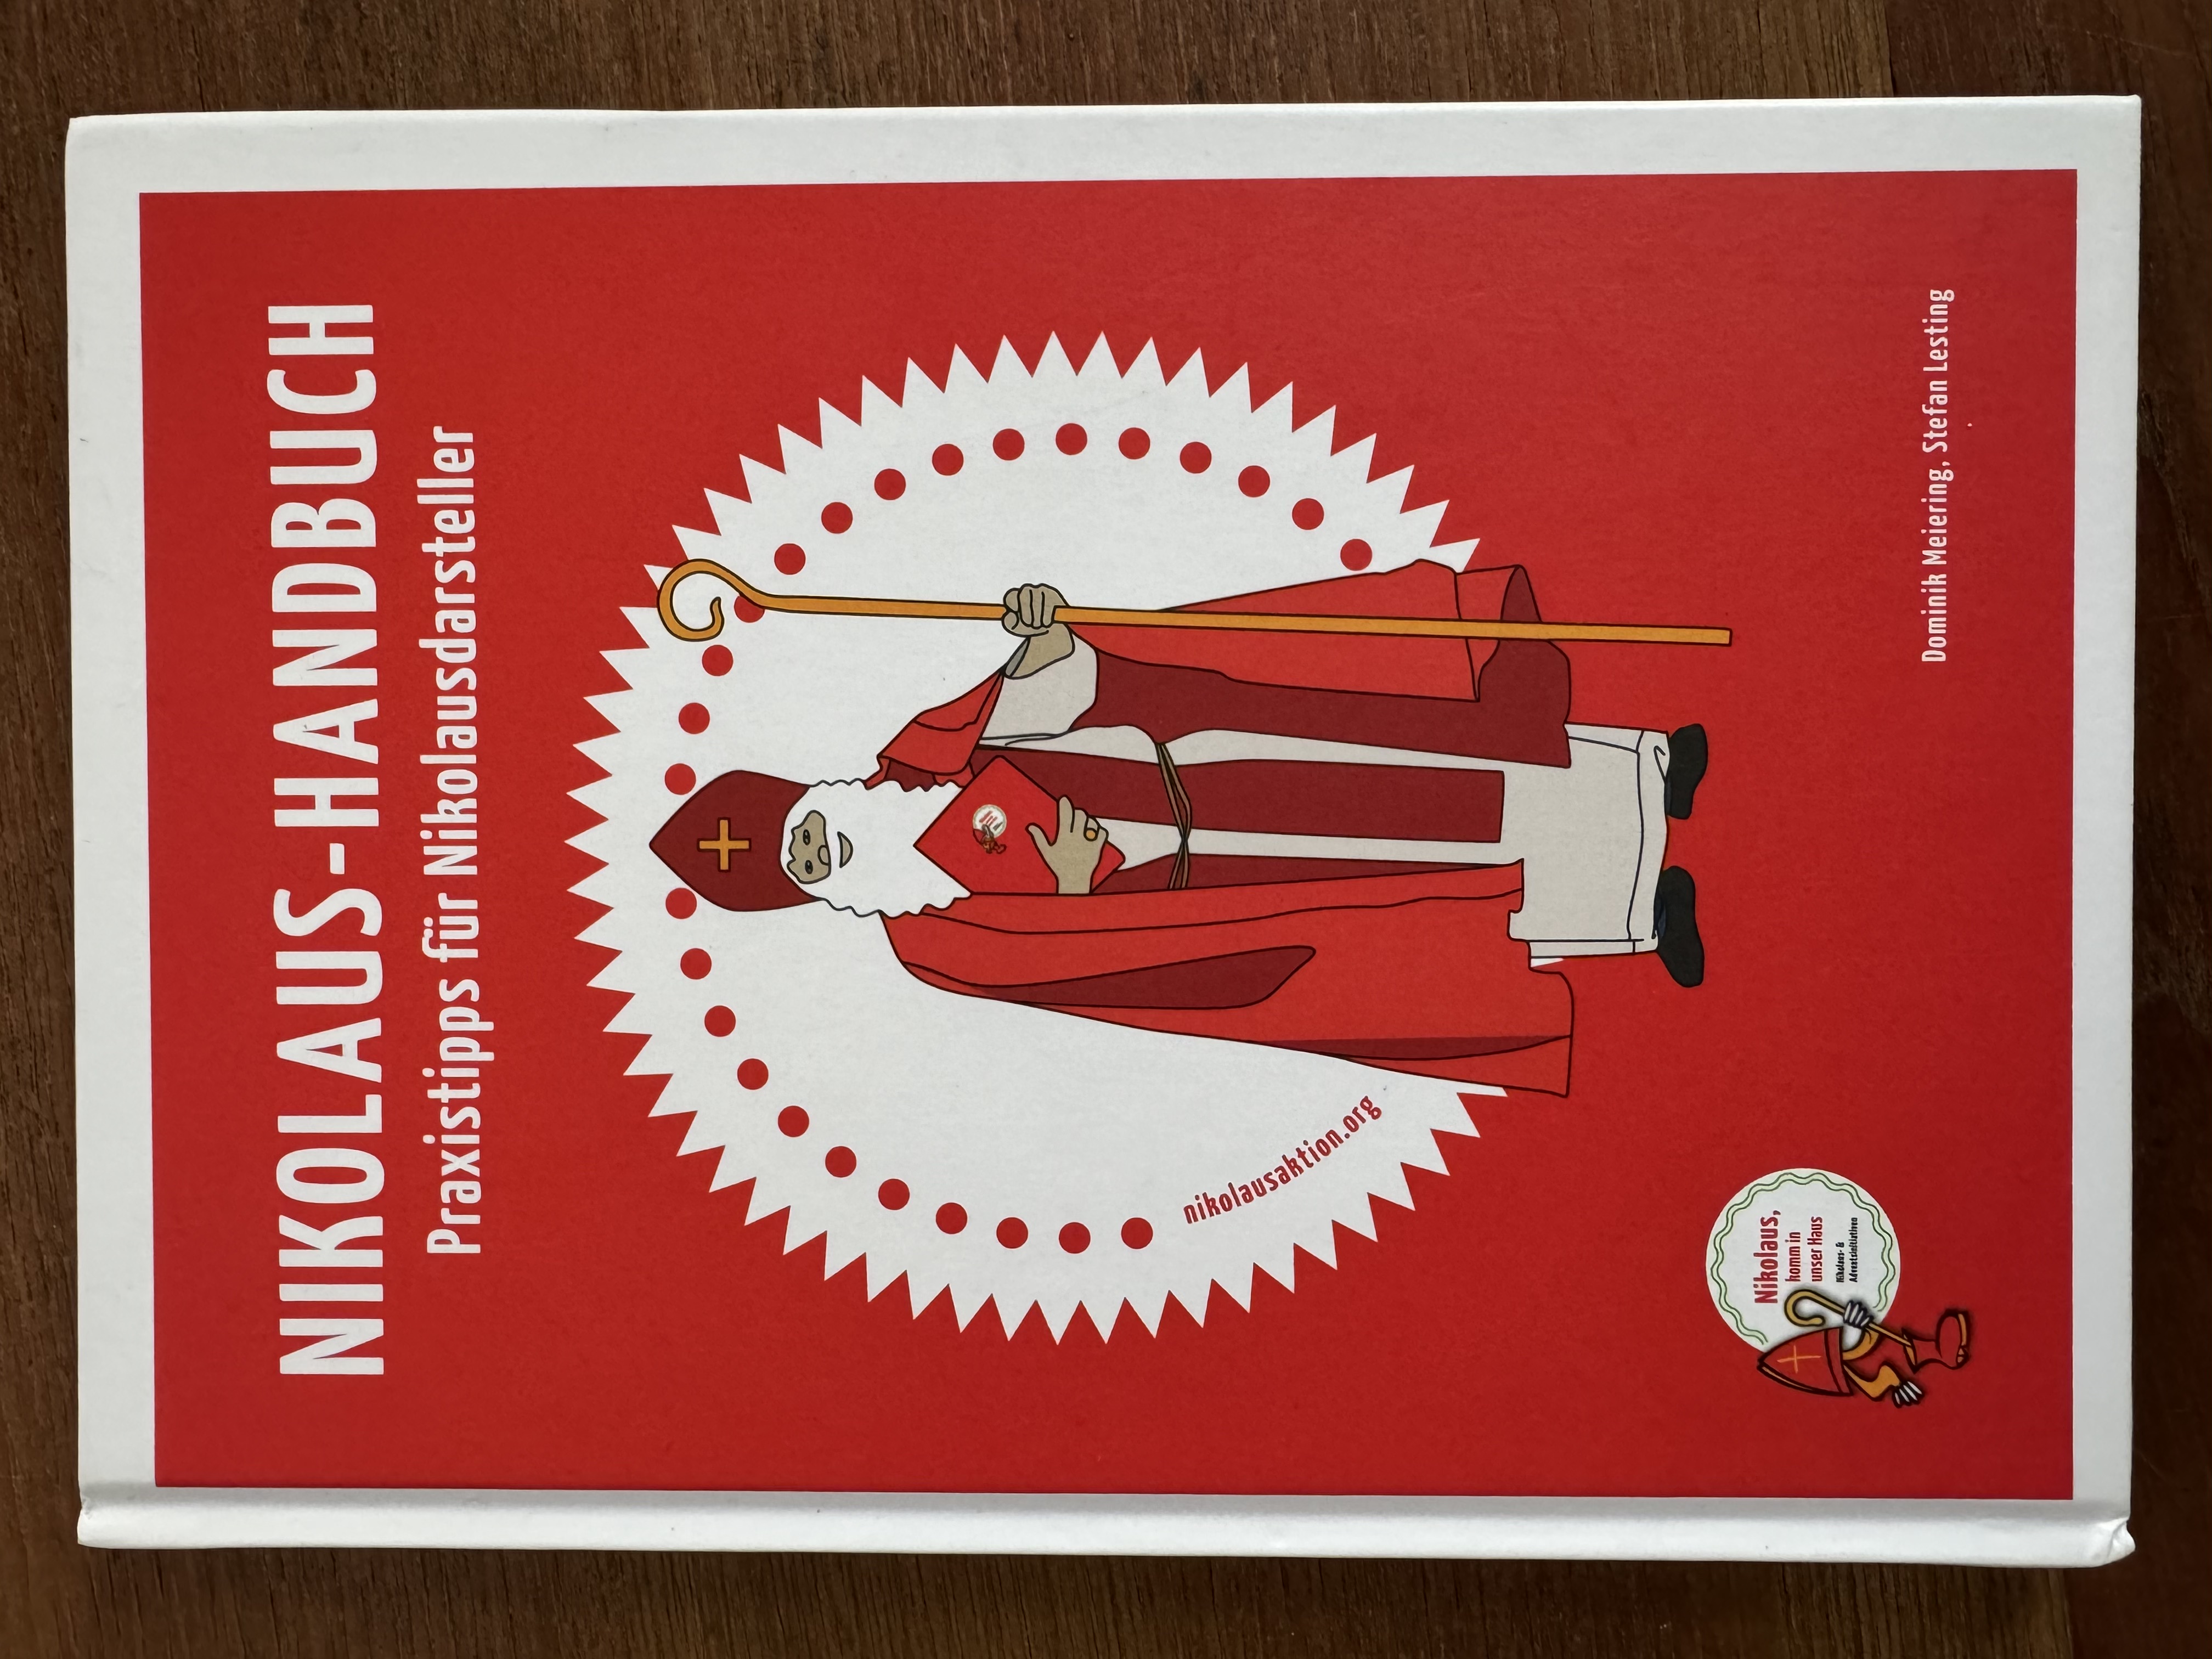 Titelseite des Nikolaus-Handbuch der Bund der Deutschen Katholischen Jugend. Gezeichneter Nikolaus auf einem weißen Kreis mit rotem Hintergrund.